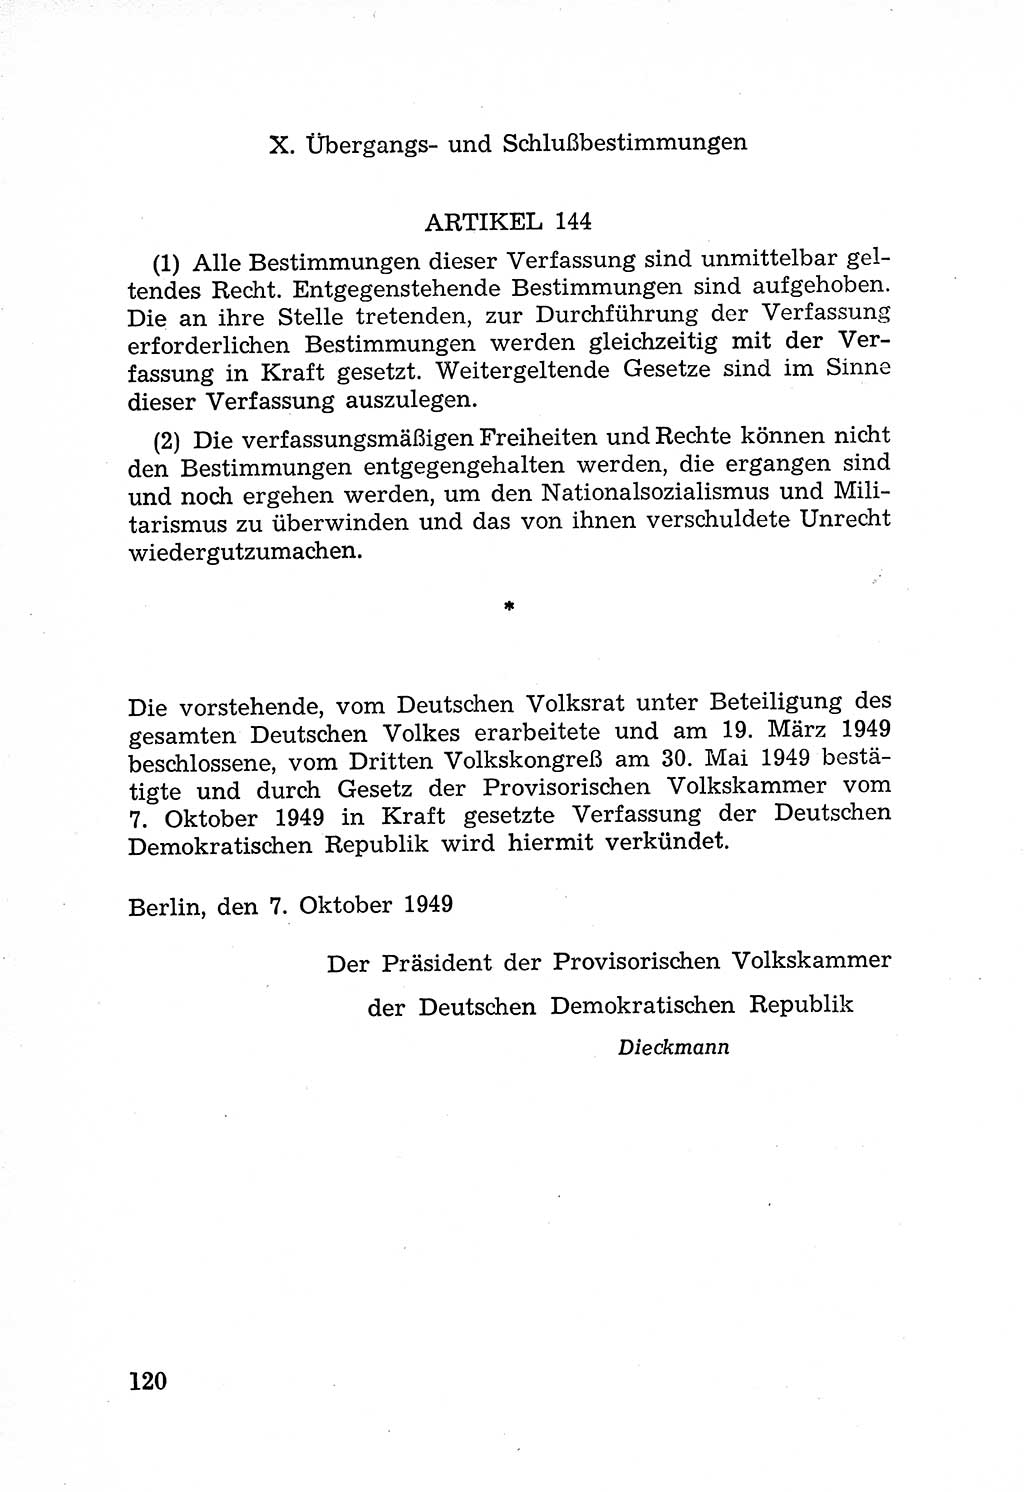 Rechtsstaat in zweierlei Hinsicht, Untersuchungsausschuß freiheitlicher Juristen (UfJ) [Bundesrepublik Deutschland (BRD)] 1956, Seite 120 (R.-St. UfJ BRD 1956, S. 120)